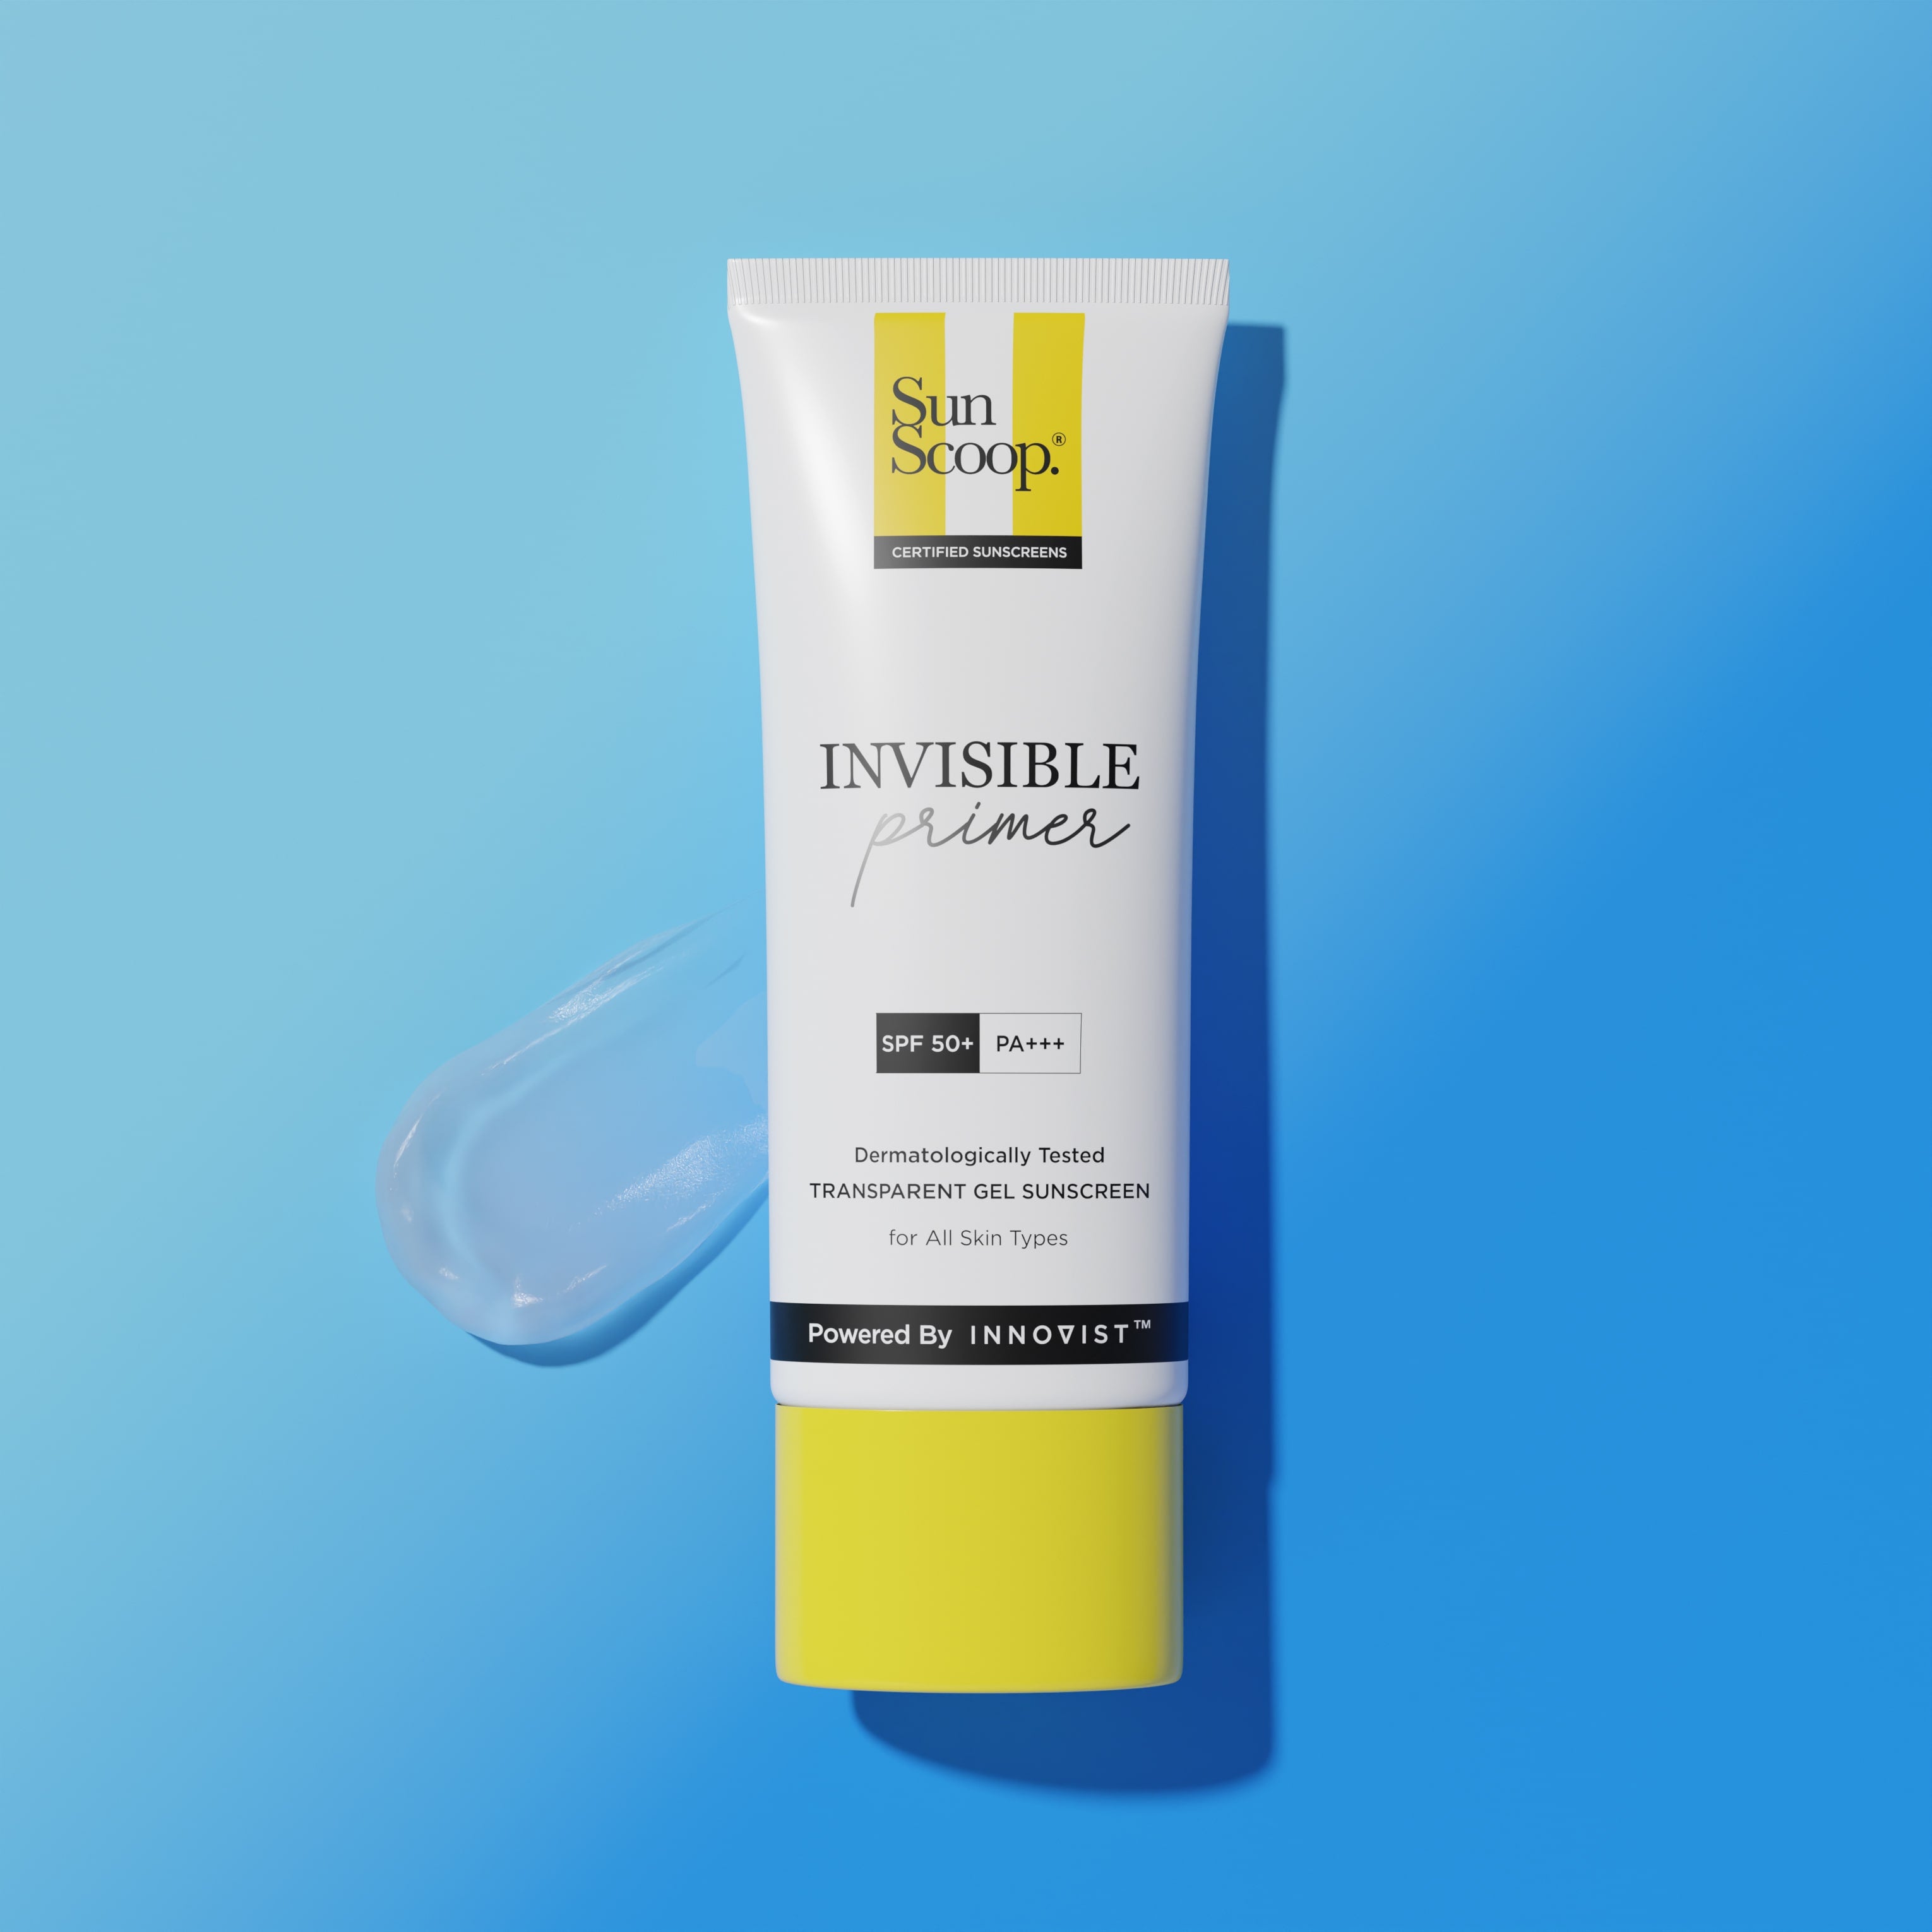 Invisible Primer Sunscreen | SPF 50 PA+++